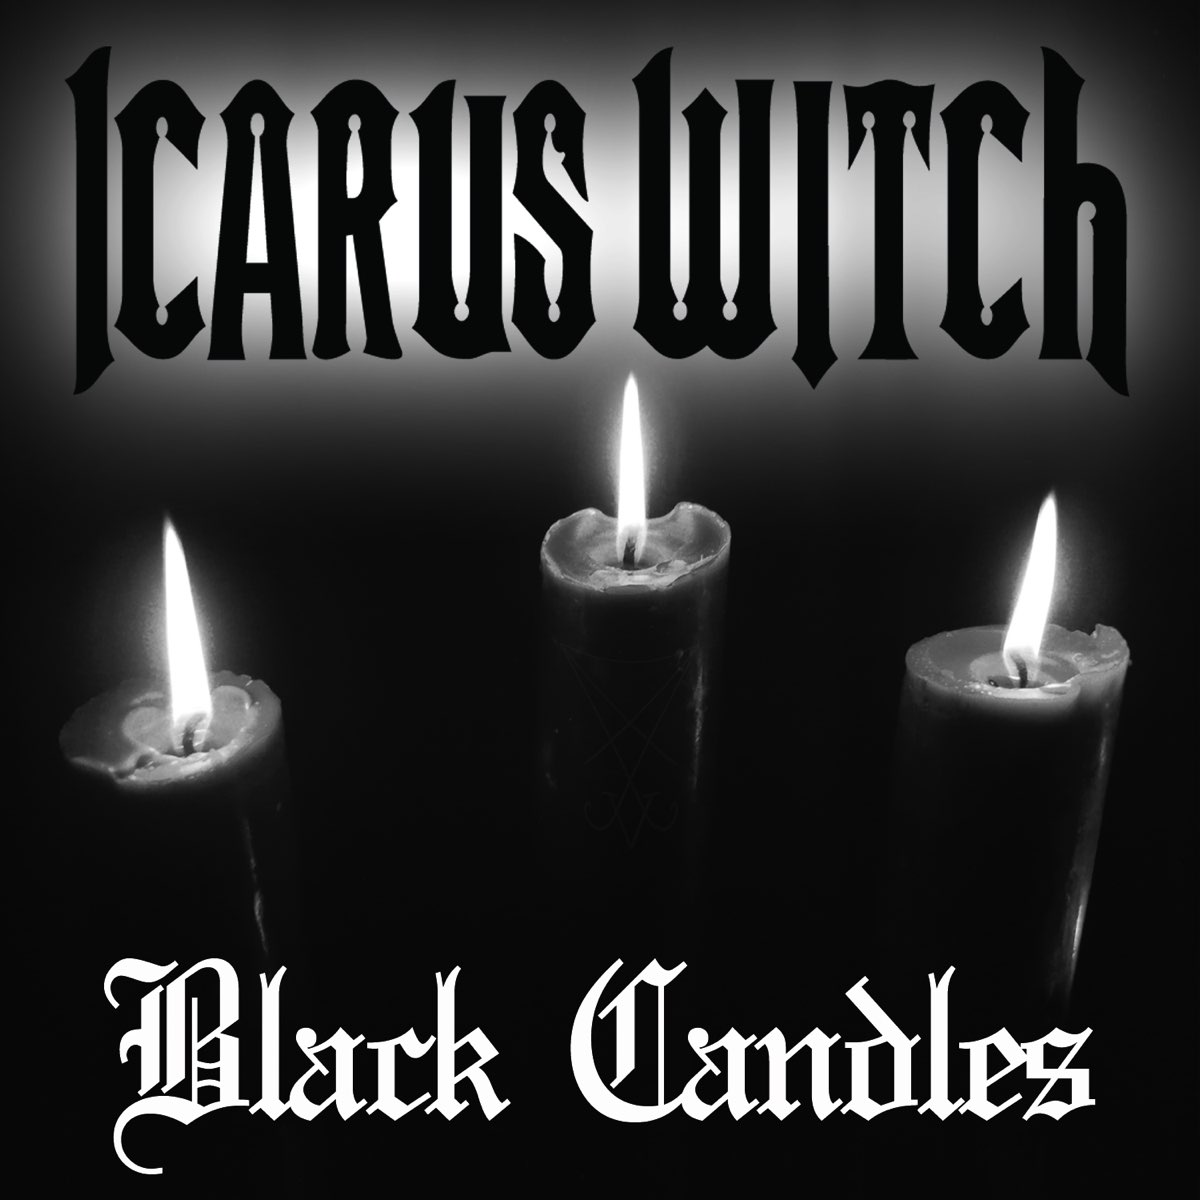 Песня черная свеча. Black Metal Candle. Черная свеча песня.